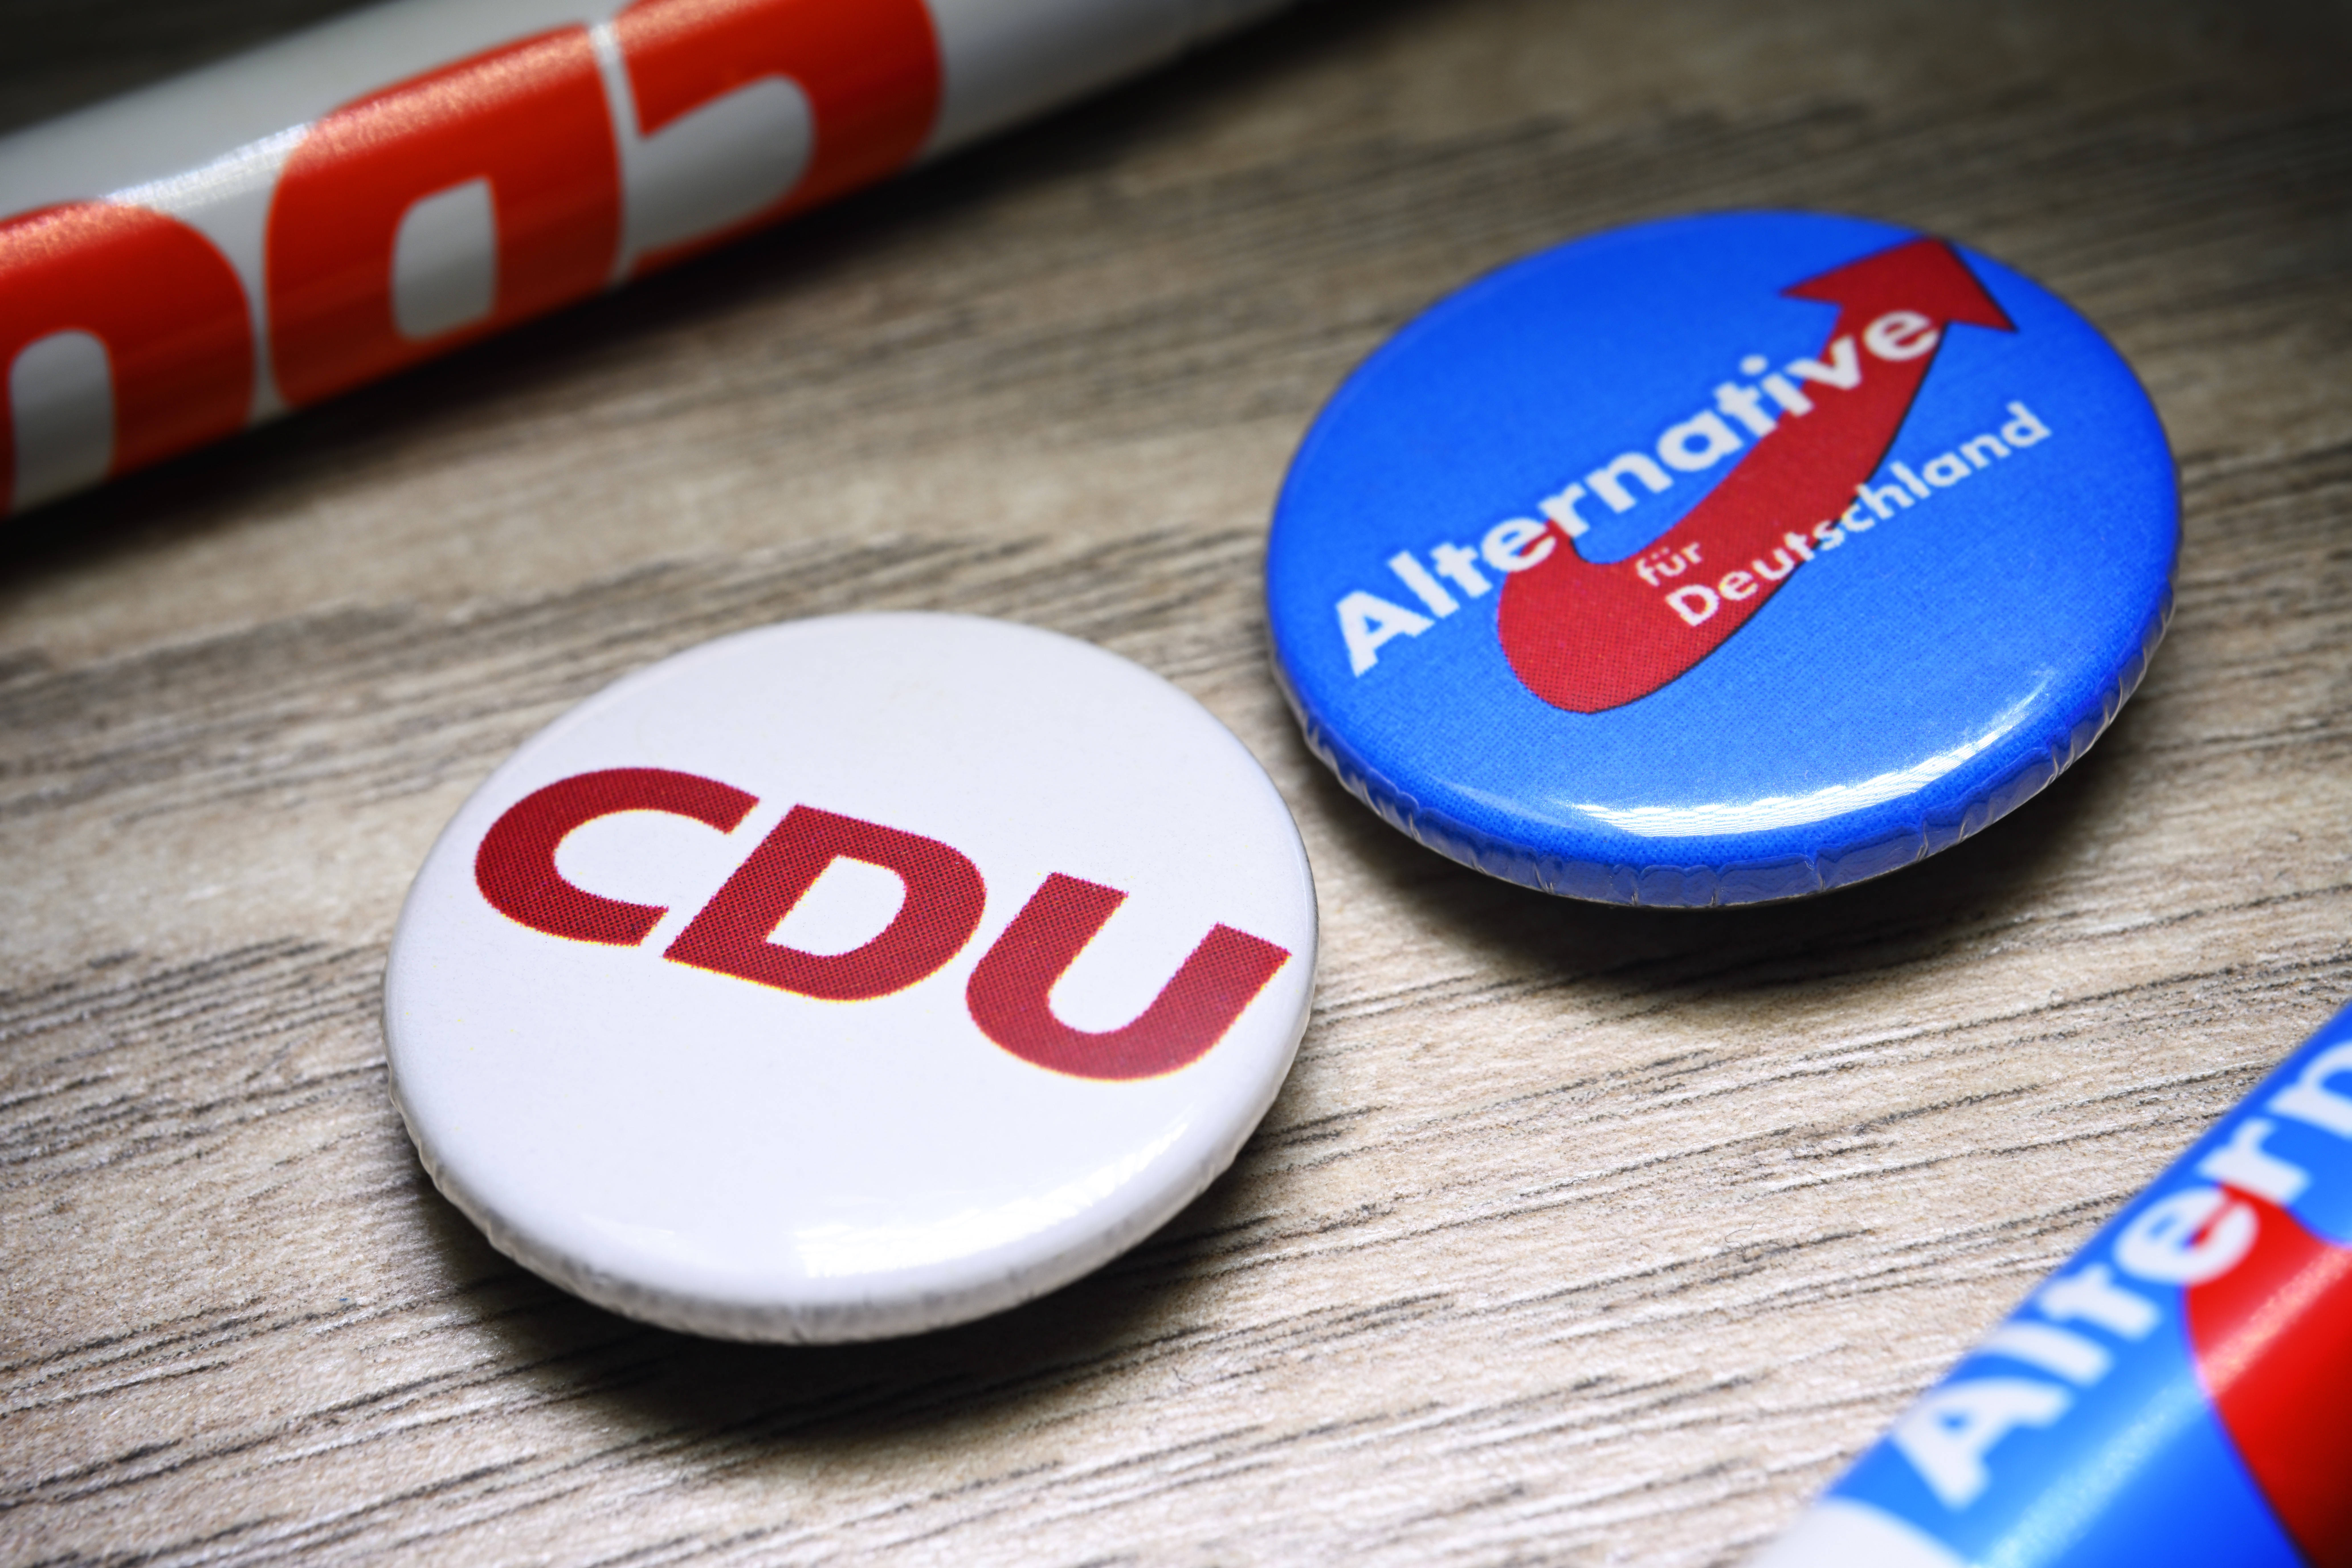 Abgrenzung oder Annäherung? Die CDU taumelt auf die AfD zu.